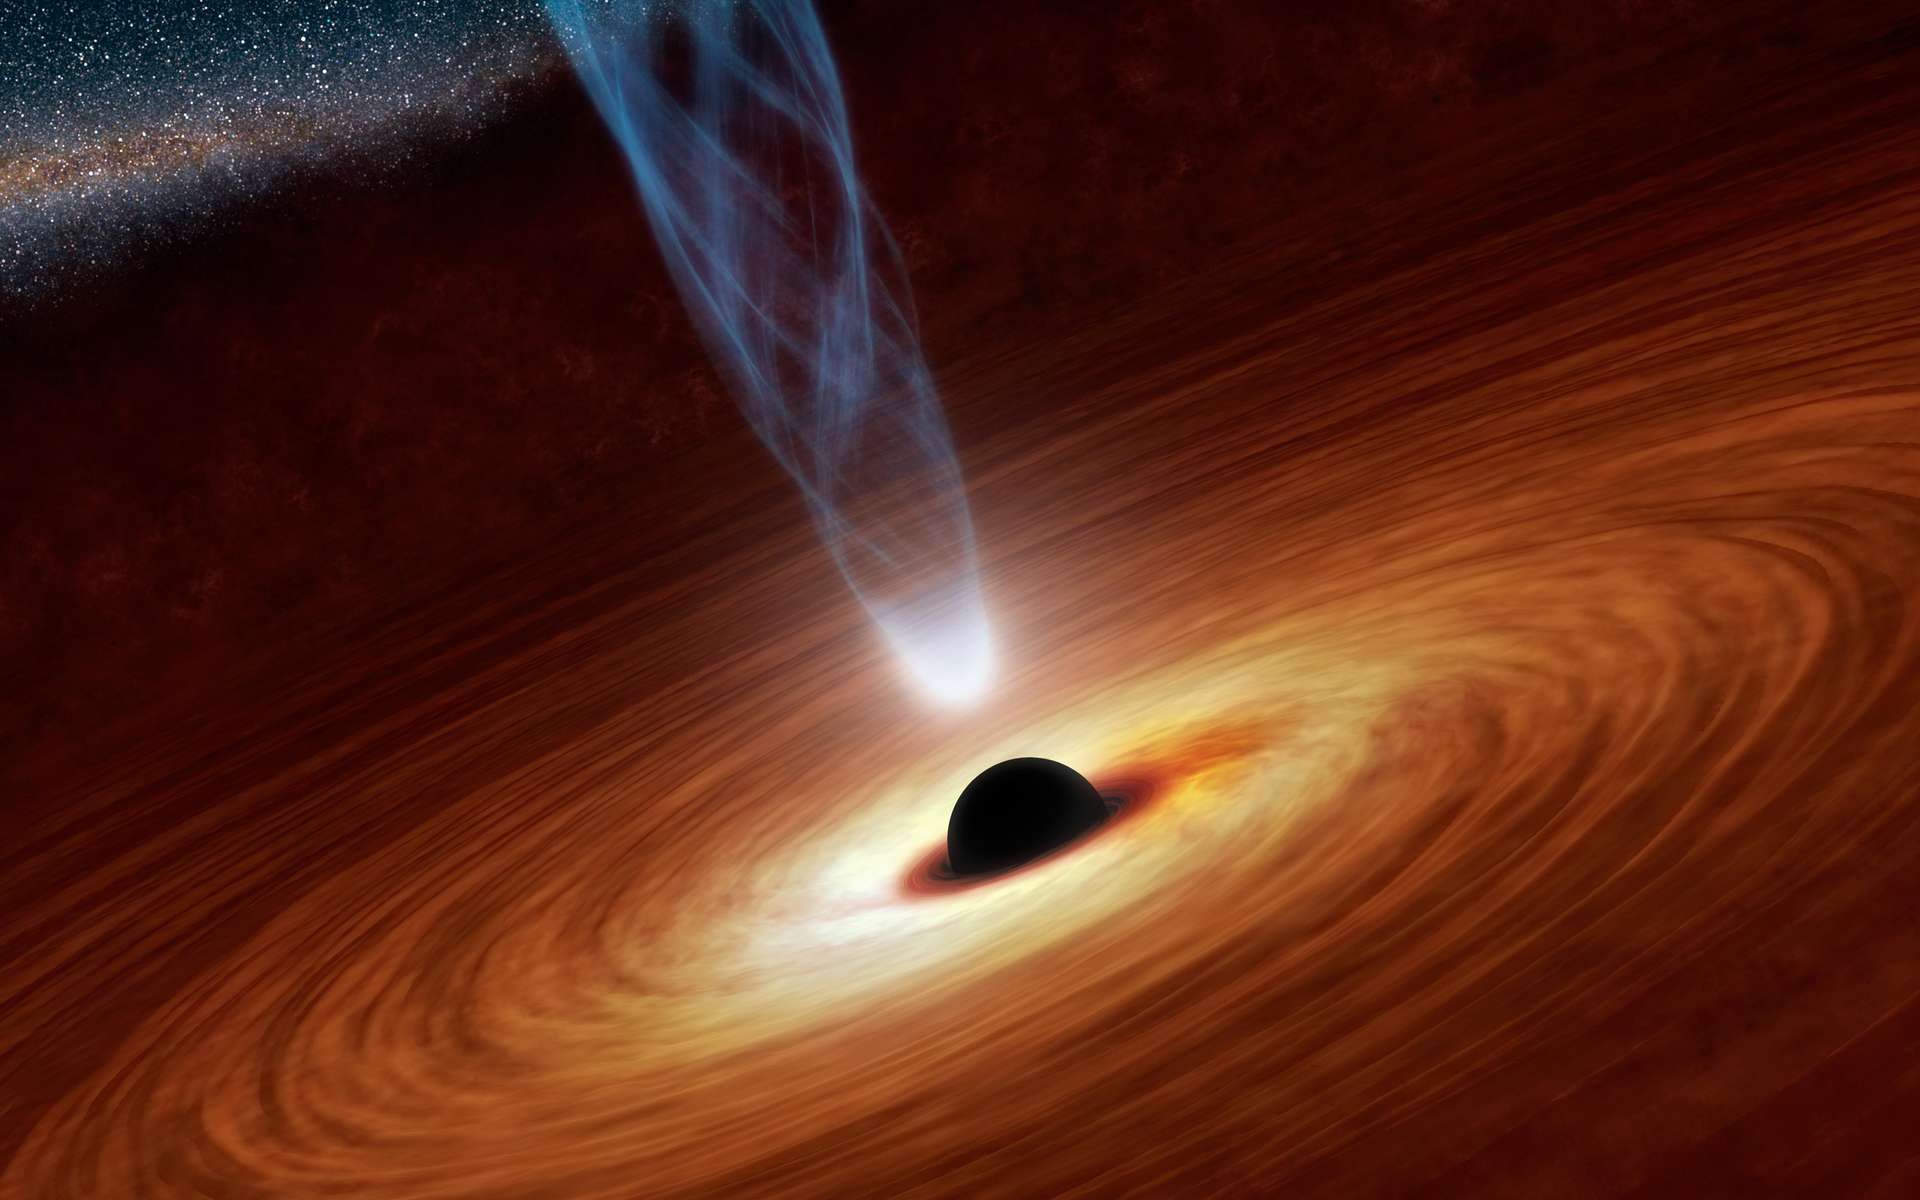 Cette vue d'artiste illustre un trou noir supermassif avec des millions à des milliards de fois la masse de notre Soleil. Les trous noirs supermassifs sont des objets extrêmement denses enfouis au cœur des galaxies. Dans cette illustration, le trou noir supermassif au centre est entouré de matière s'écoulant vers le trou noir et formant ce que l'on appelle un disque d'accrétion. On voit également un jet de particules énergétiques, censé être alimenté par la rotation du trou noir. © NASA/JPL-Caltech